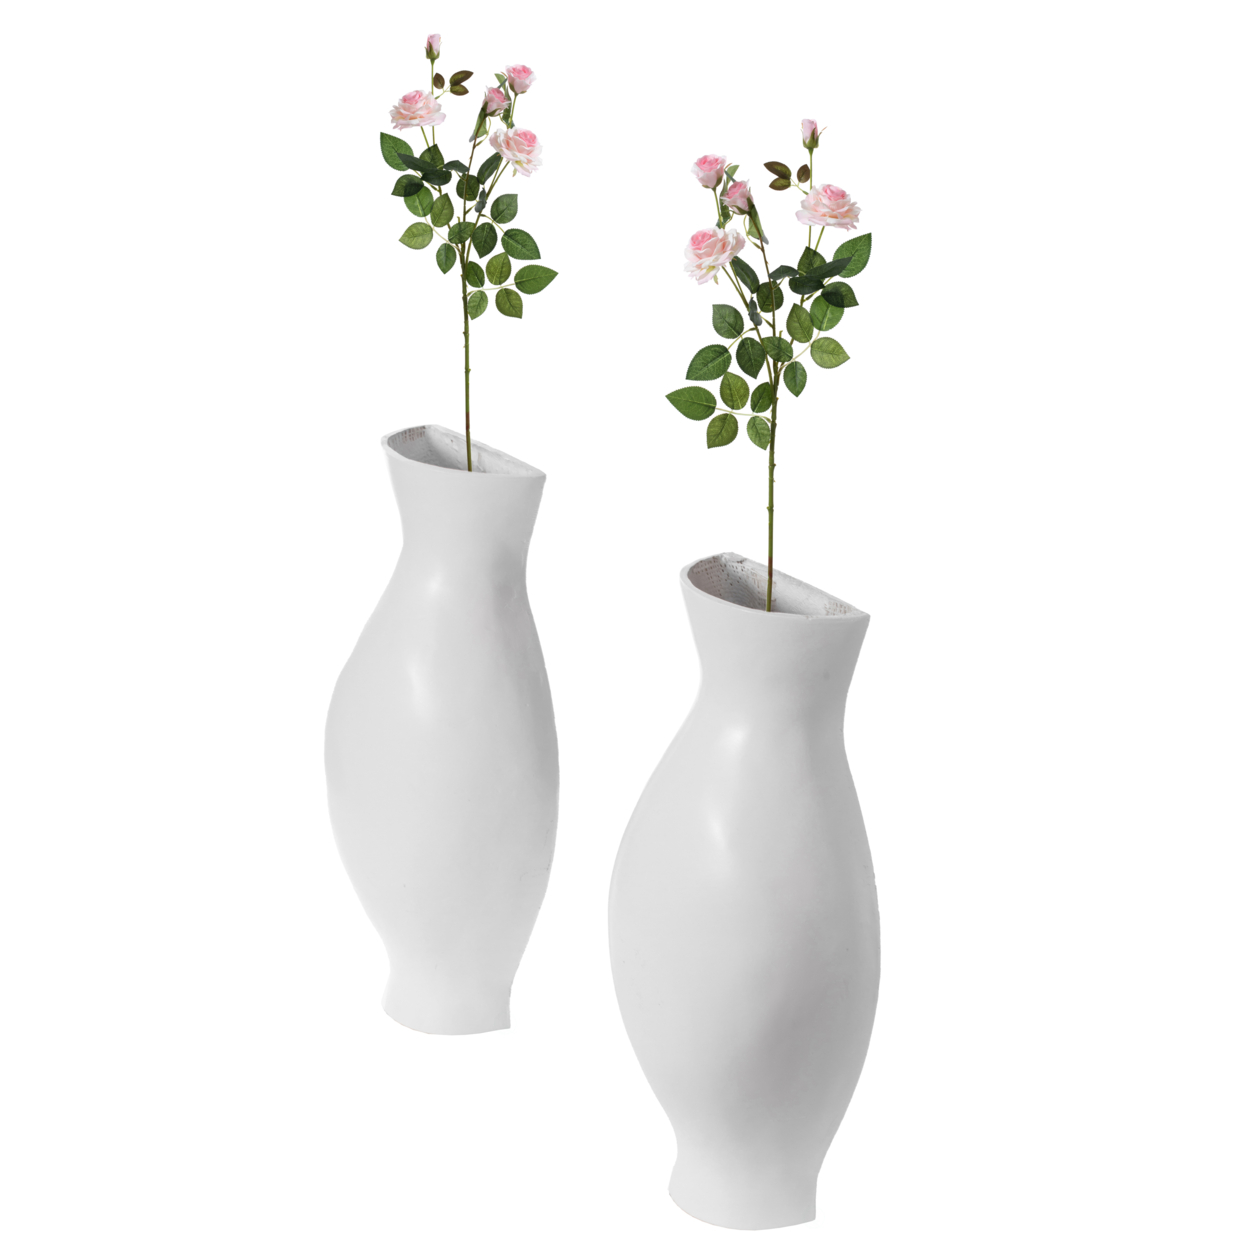 Tall Narrow Vase, Sleek Split Vase, Modern Floor Vase, Decorative Gift, Vase For Interior Design, 24.5 Inch Vase - Set Of 2 White